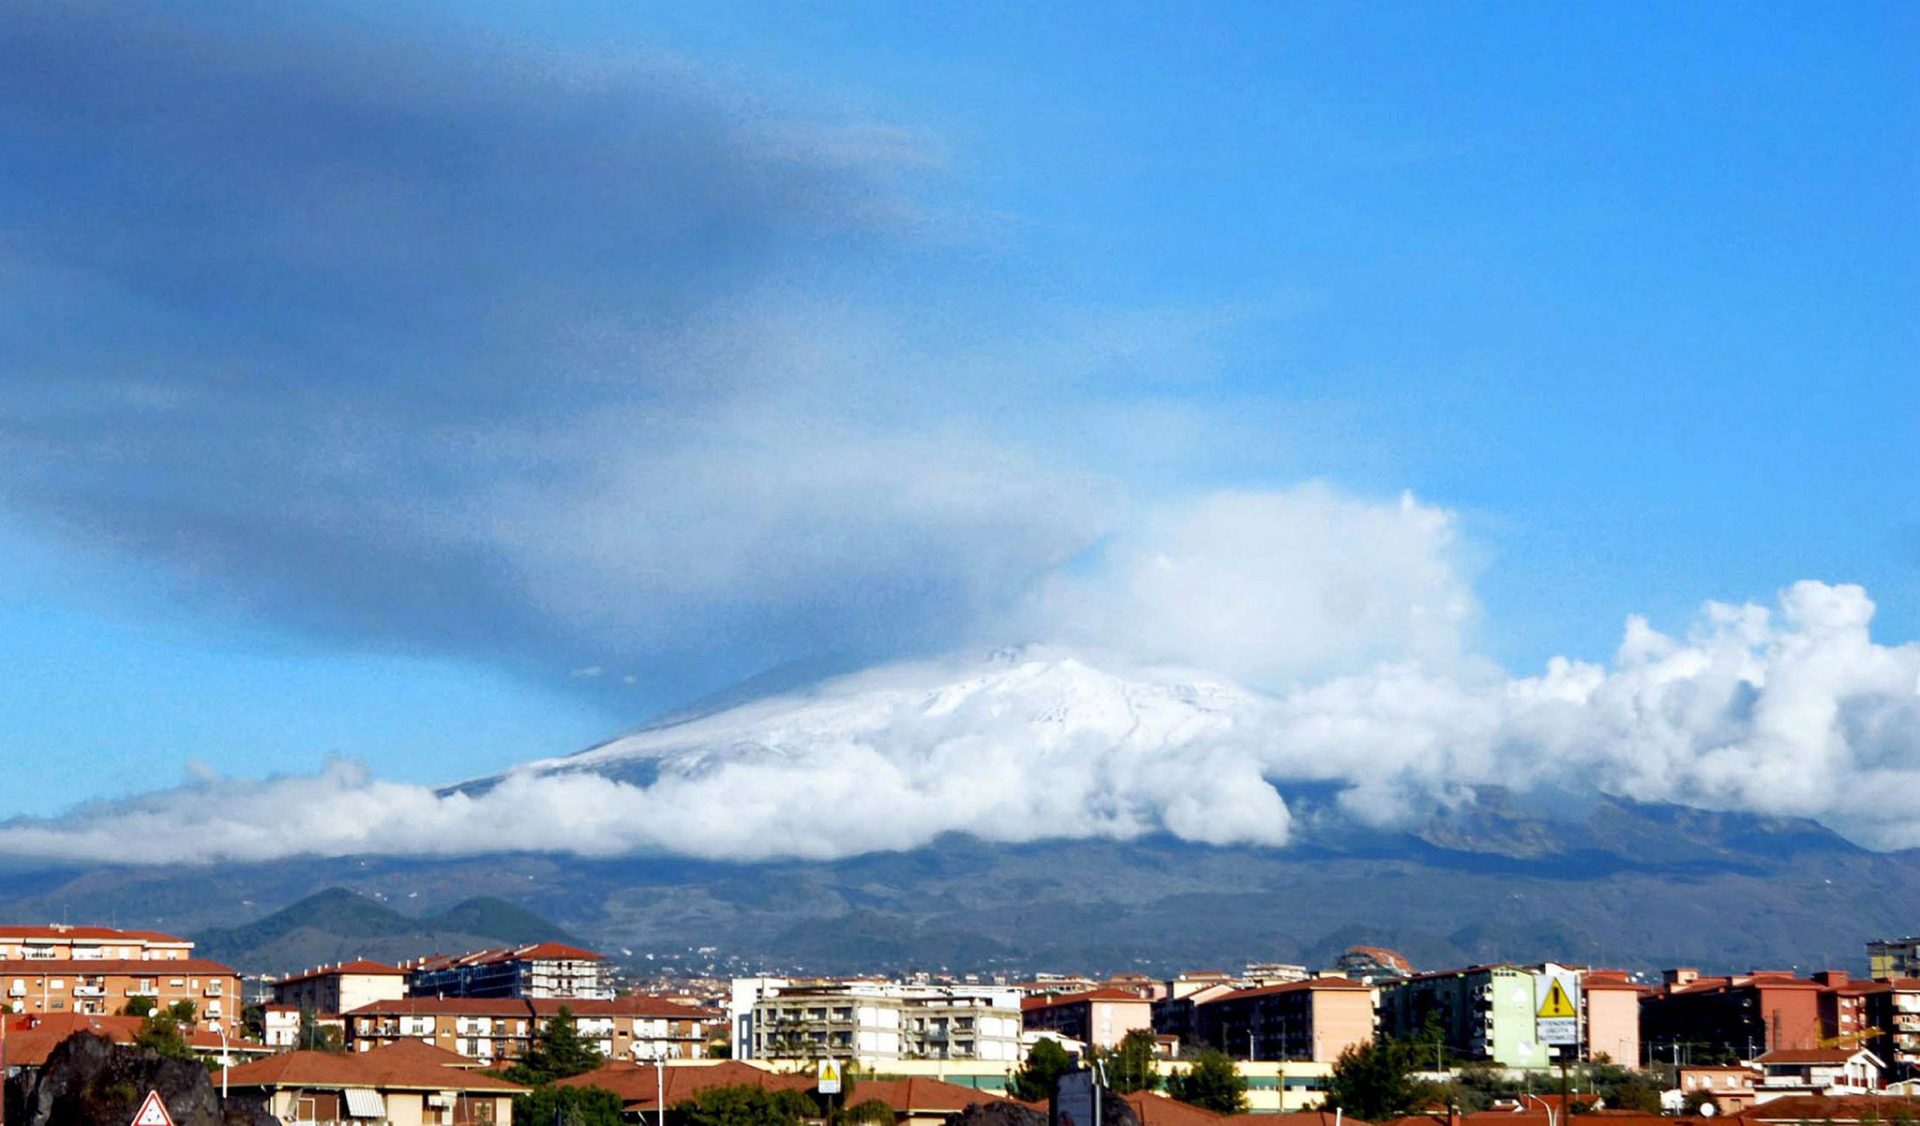 Imagen panorámica de archivo del volcán Etna ubicado en la isla italiana de Sicilia, Italia. EFE/Orietta Scardino